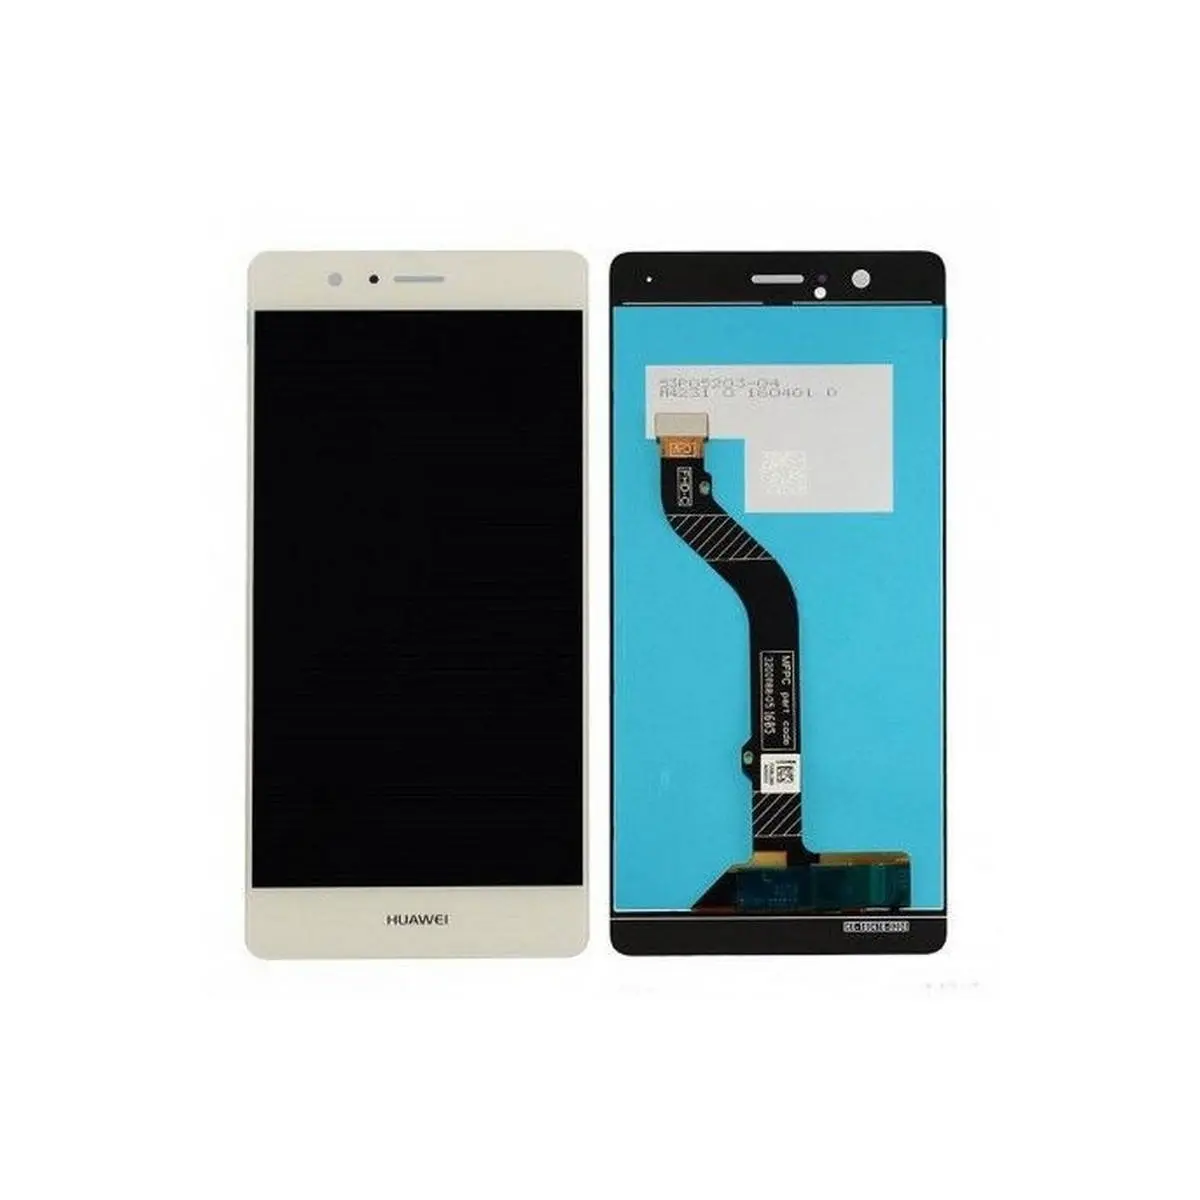 Huawei p9 lite: solución pantalla negra y bloqueo